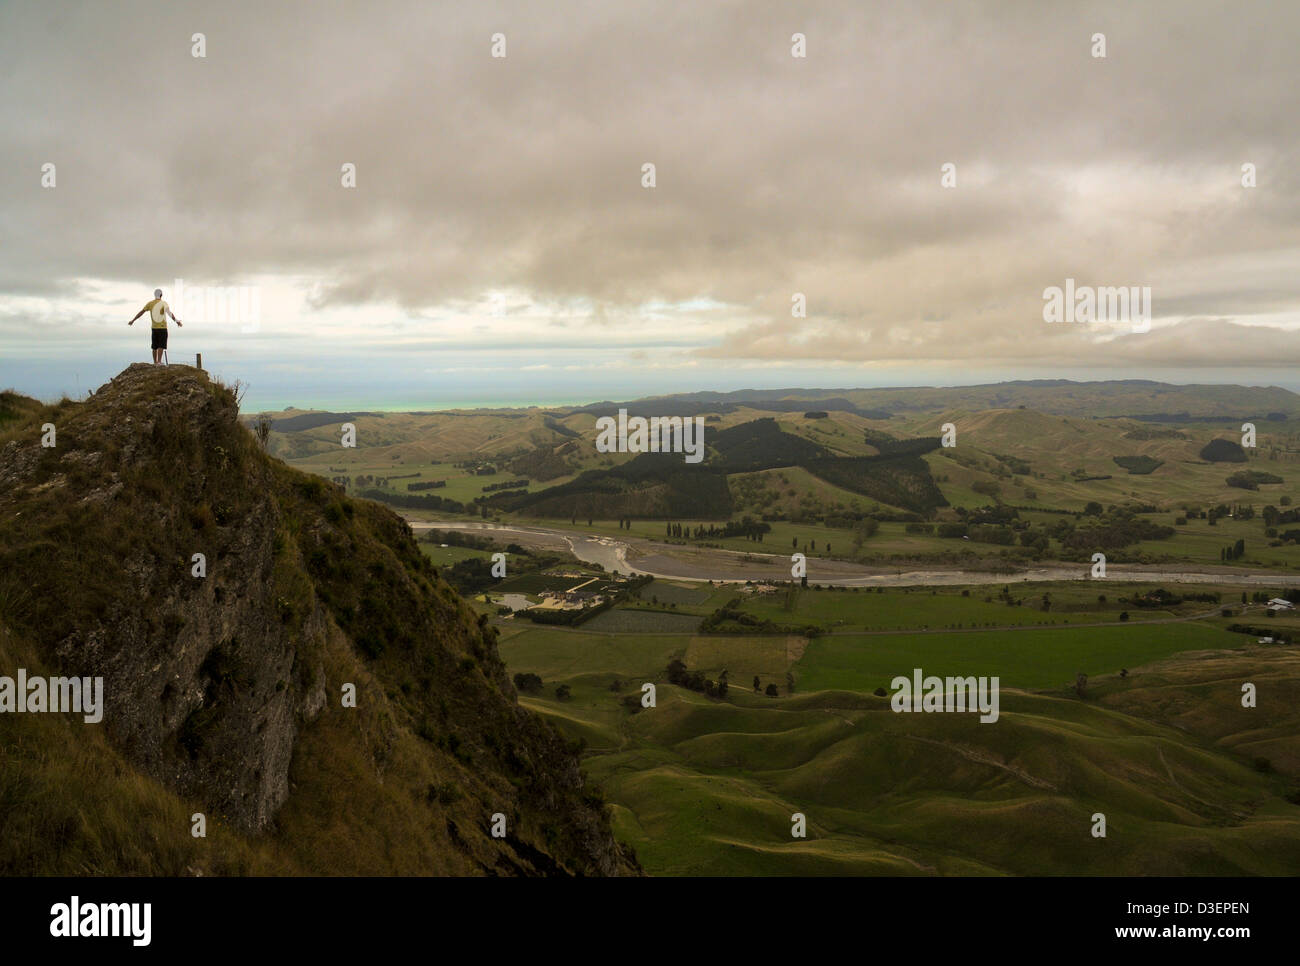 Un homme sent la puissance de la nature au sommet d'une colline dans la région de Hawke's Bay, Nouvelle-Zélande. Banque D'Images